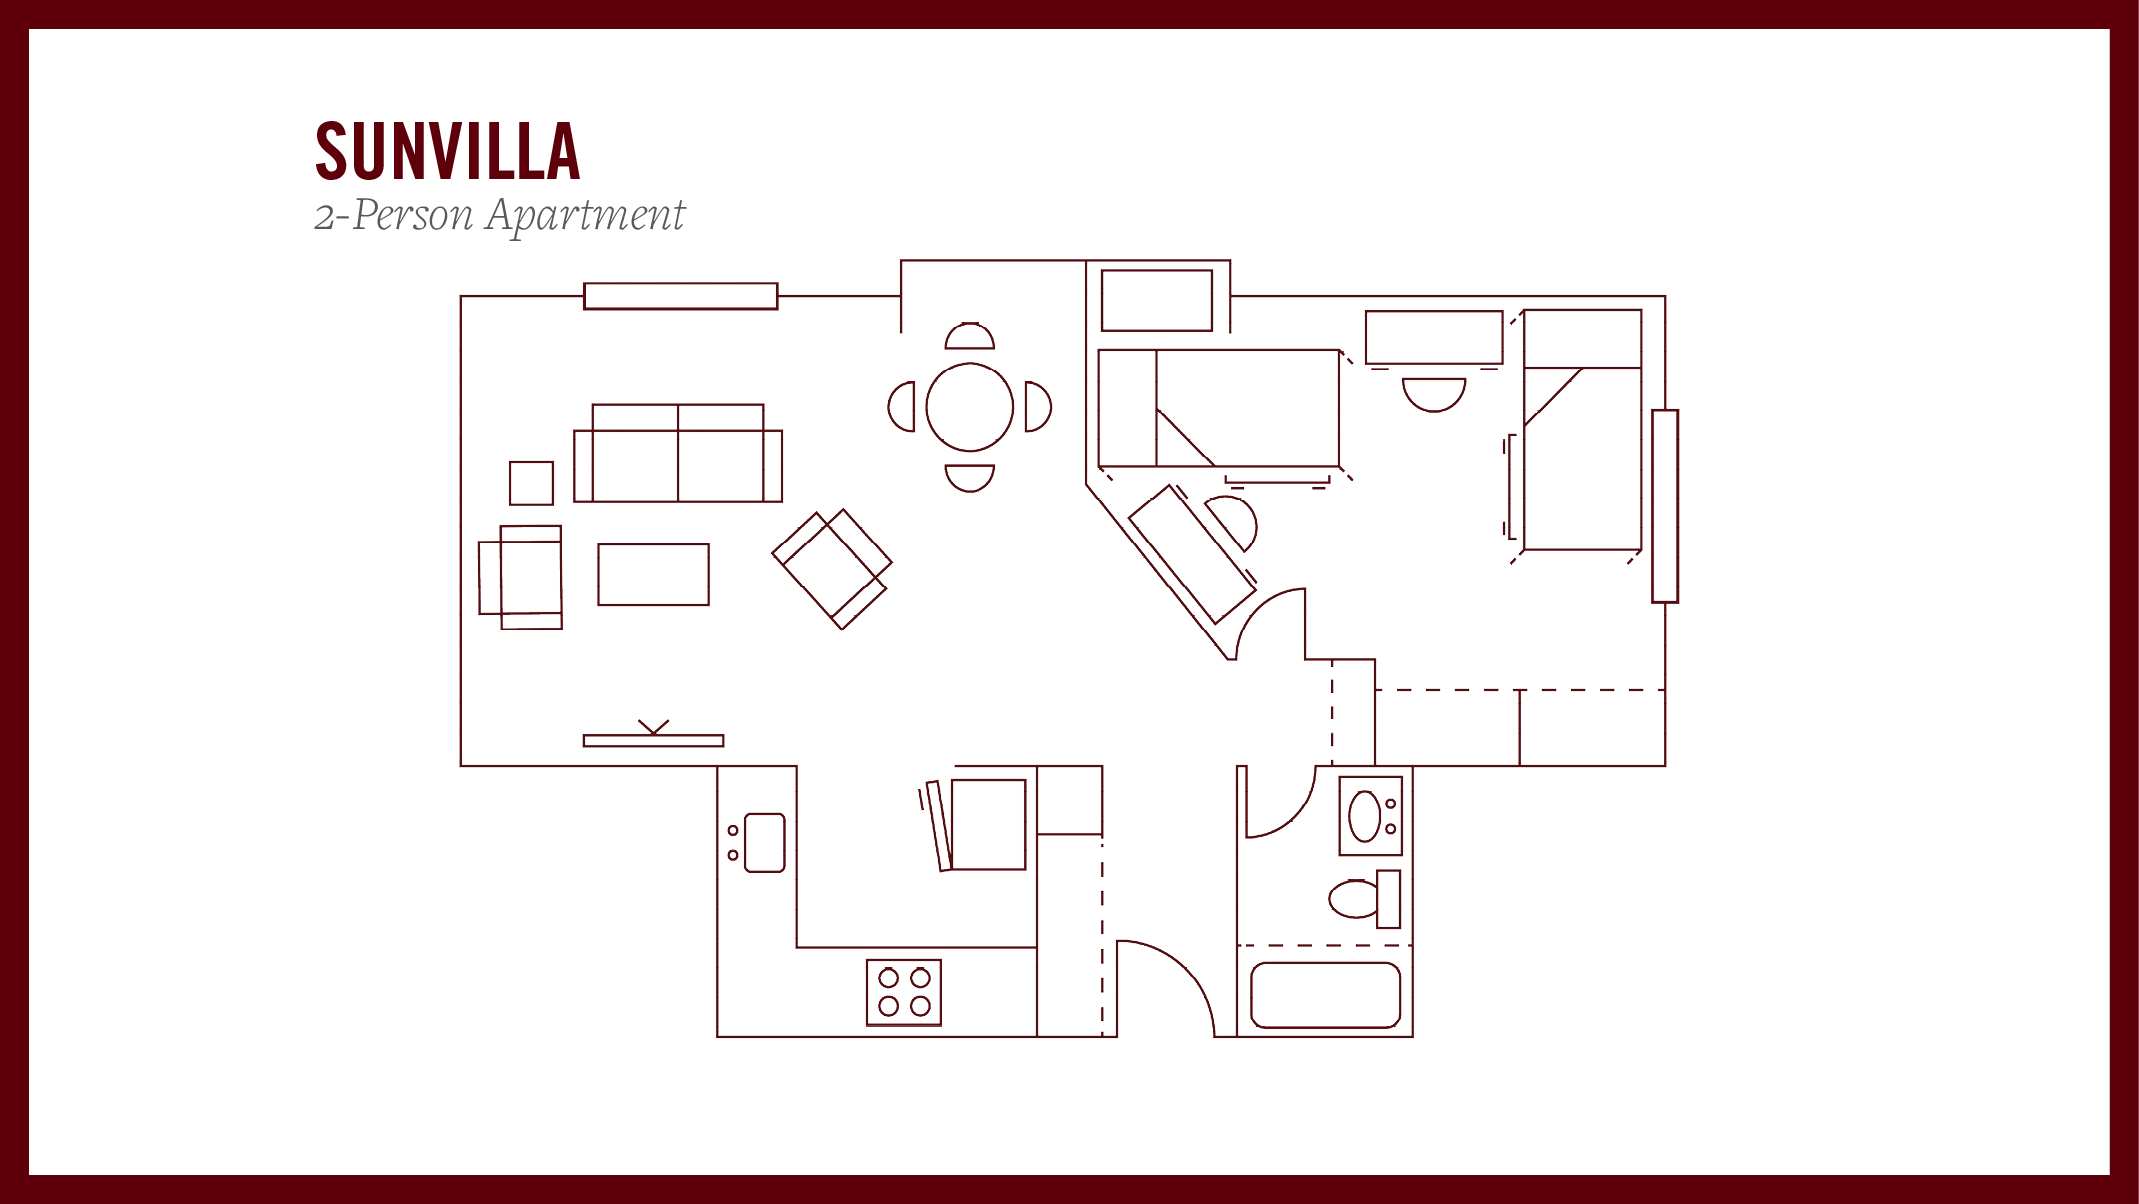 Sunvilla 2-person apartment